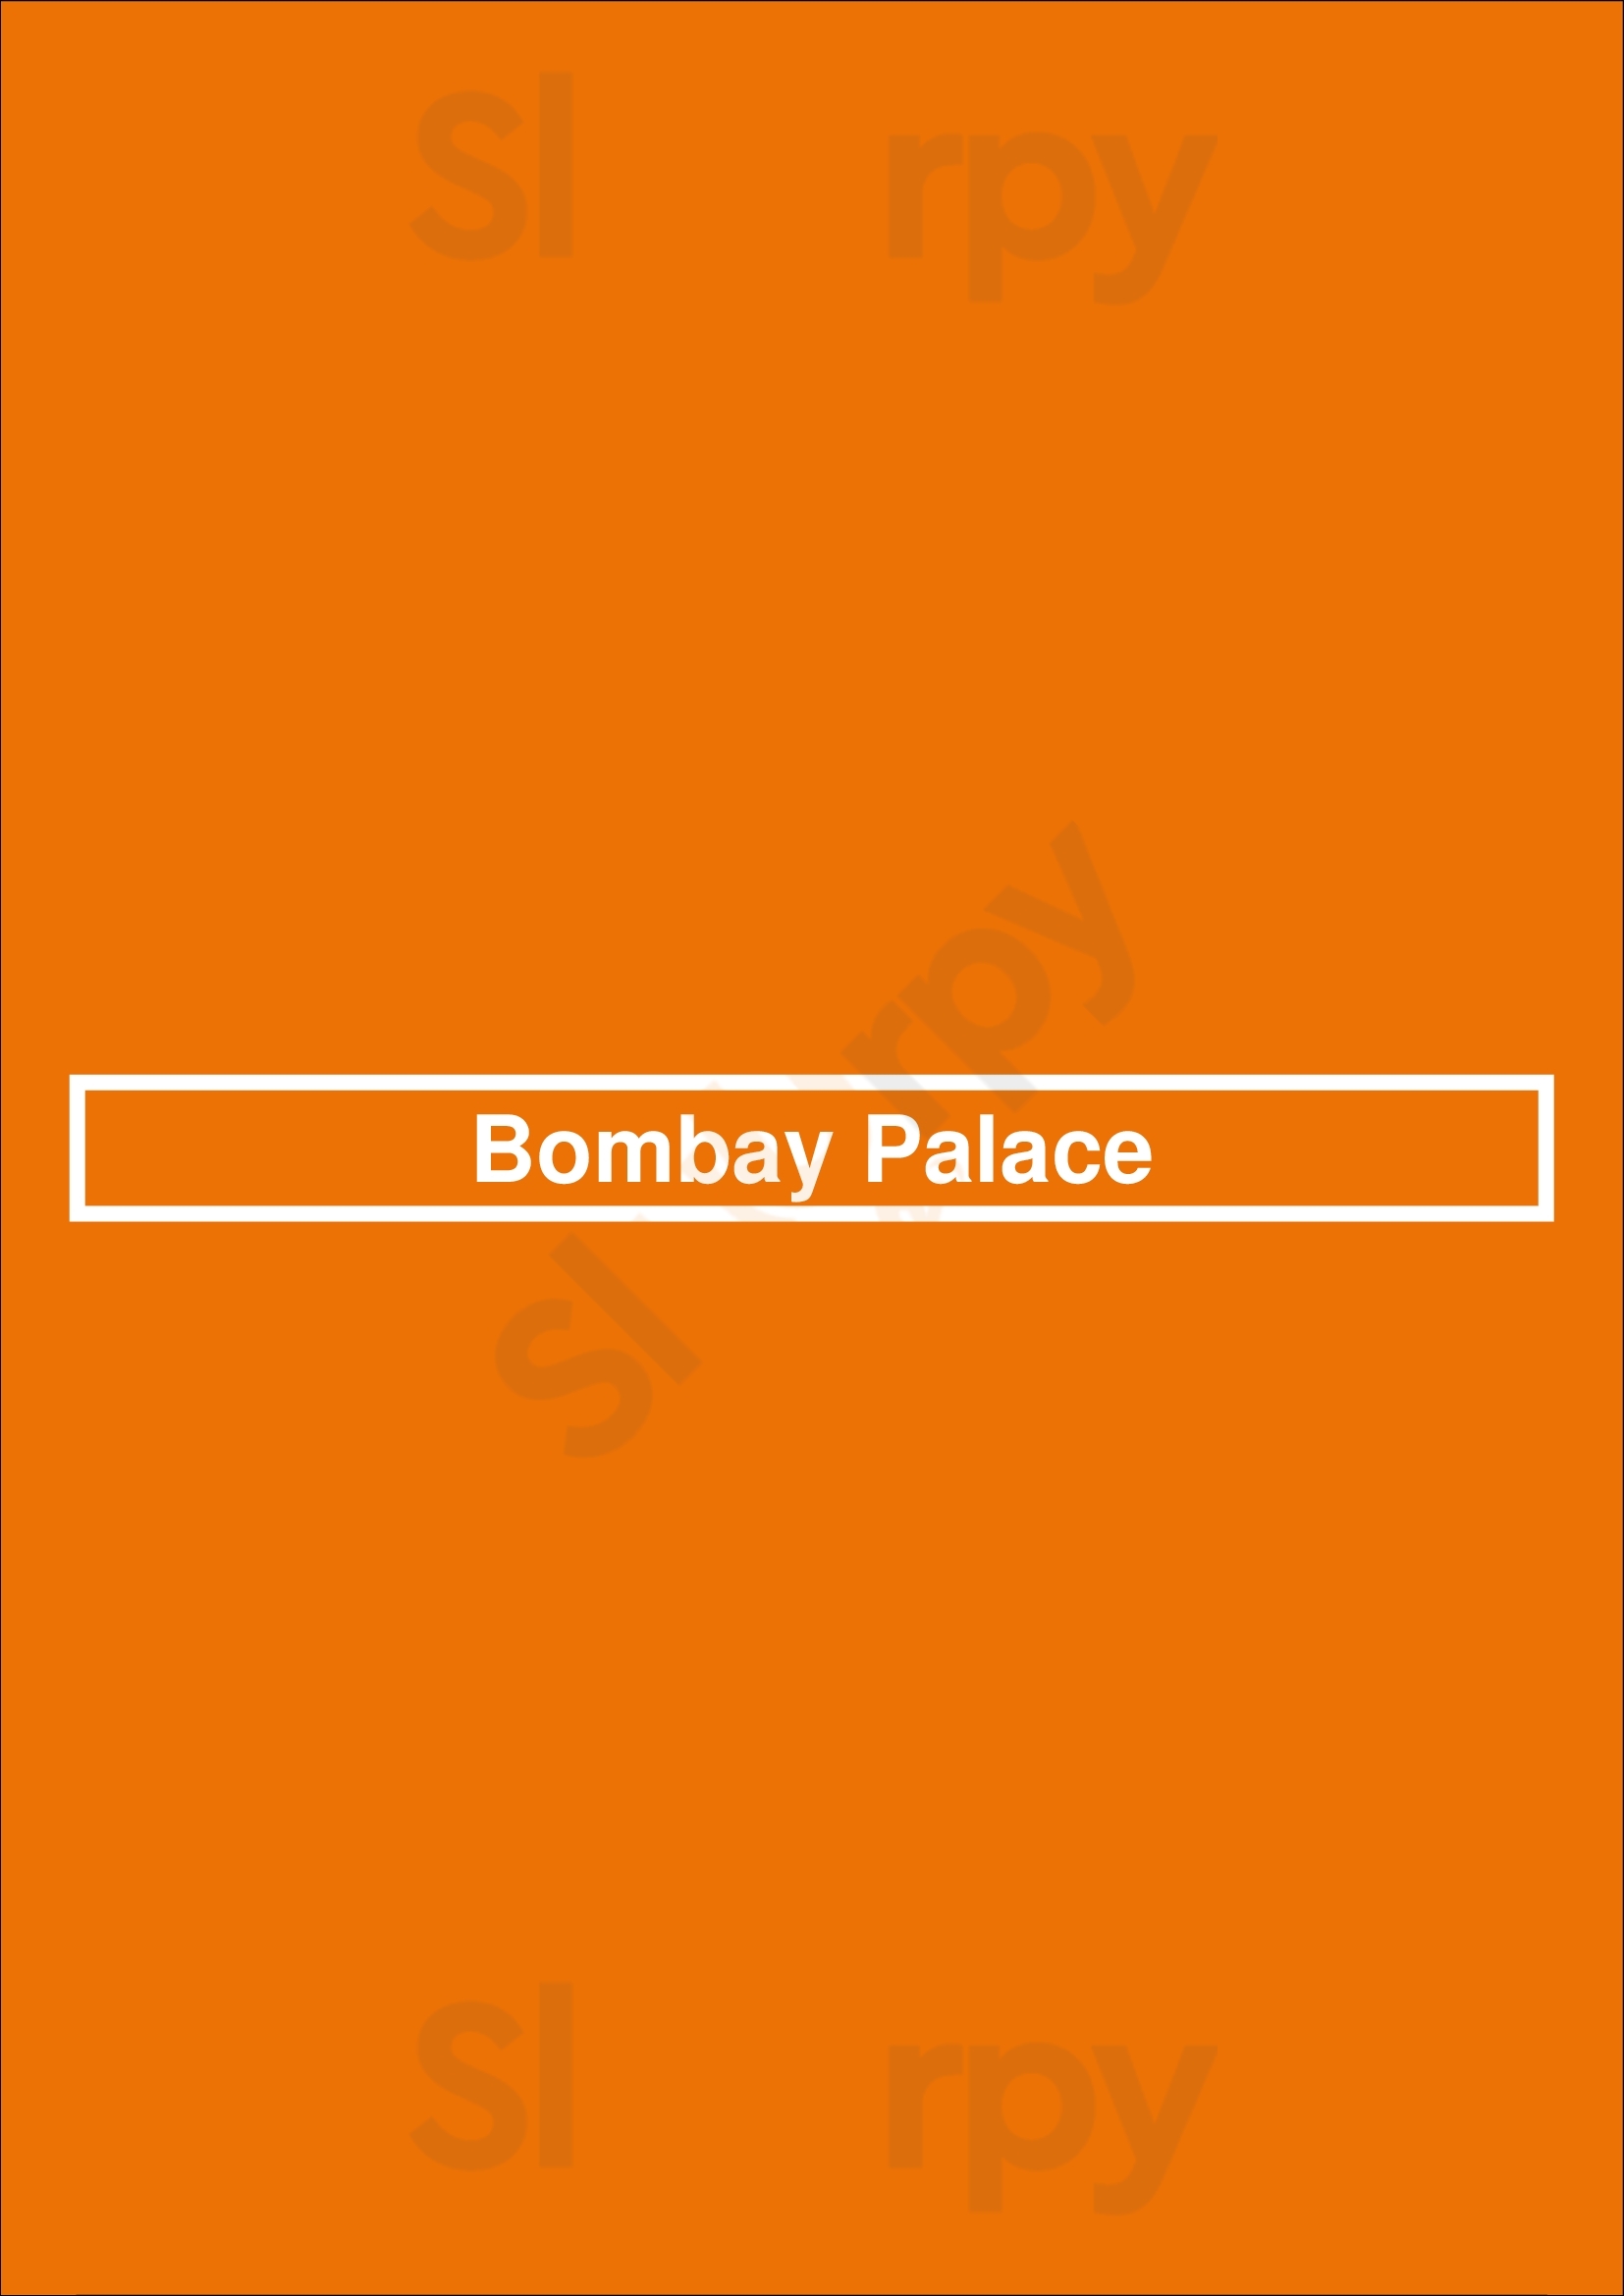 Bombay Palace Den Haag Menu - 1